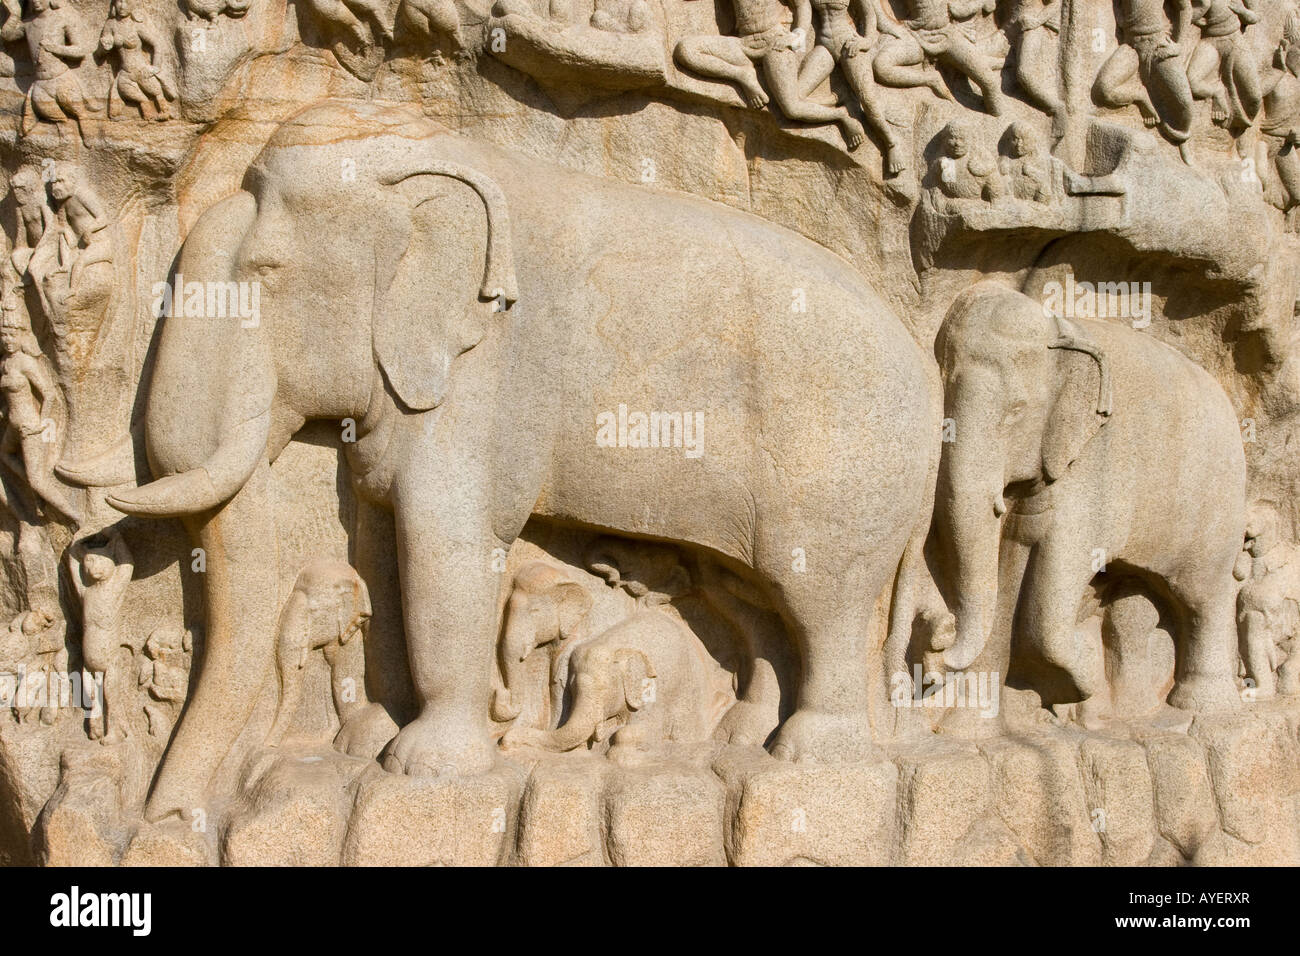 Arjunas penitenza sculture a bassorilievo in pietra a Mamallapuram India del Sud Foto Stock